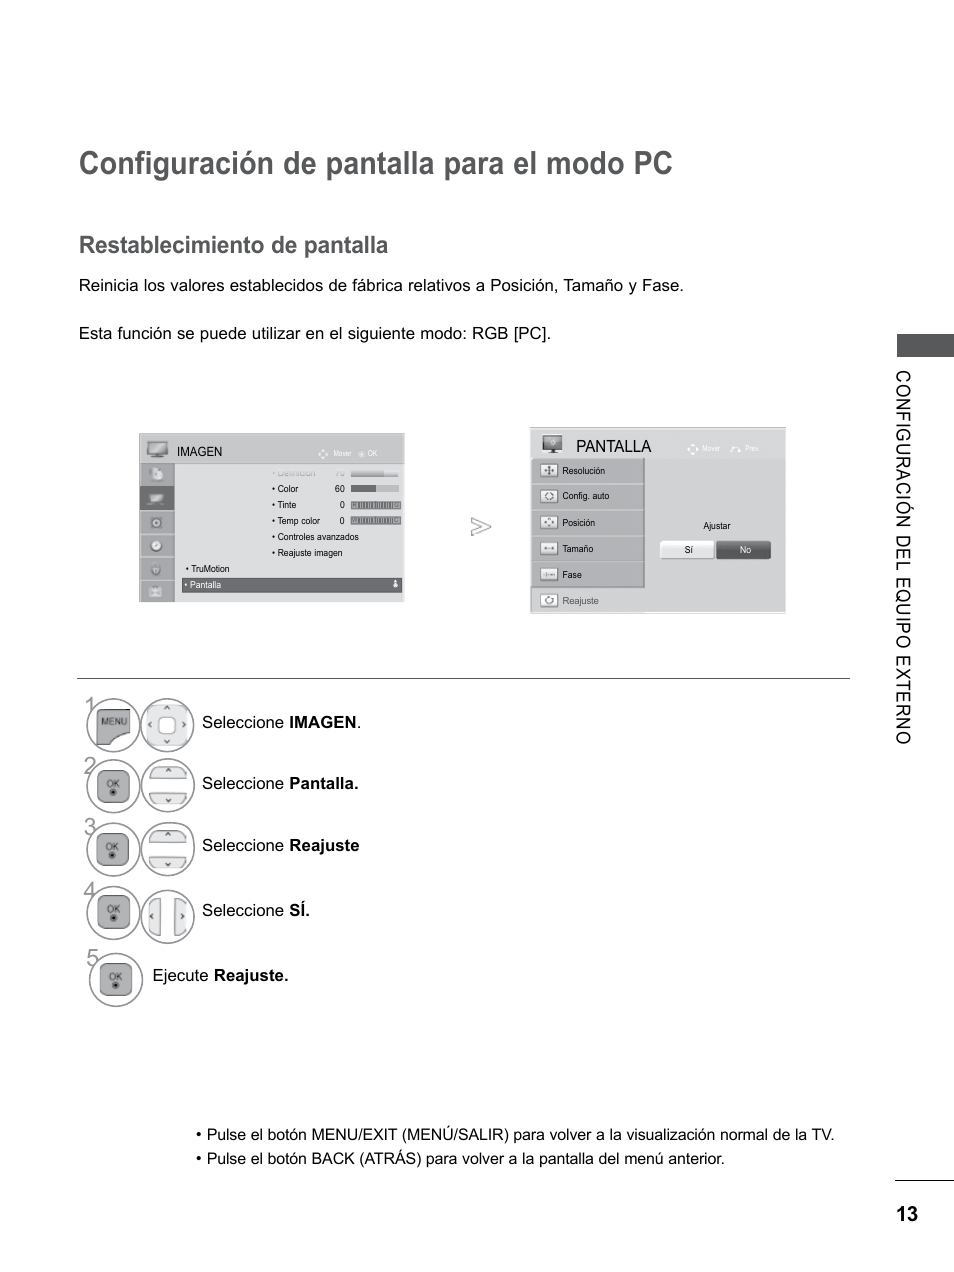 Configuración de pantalla para el modo pc, Restablecimiento de pantalla | LG 55LE5300 Manual del usuario | Página 61 / 206